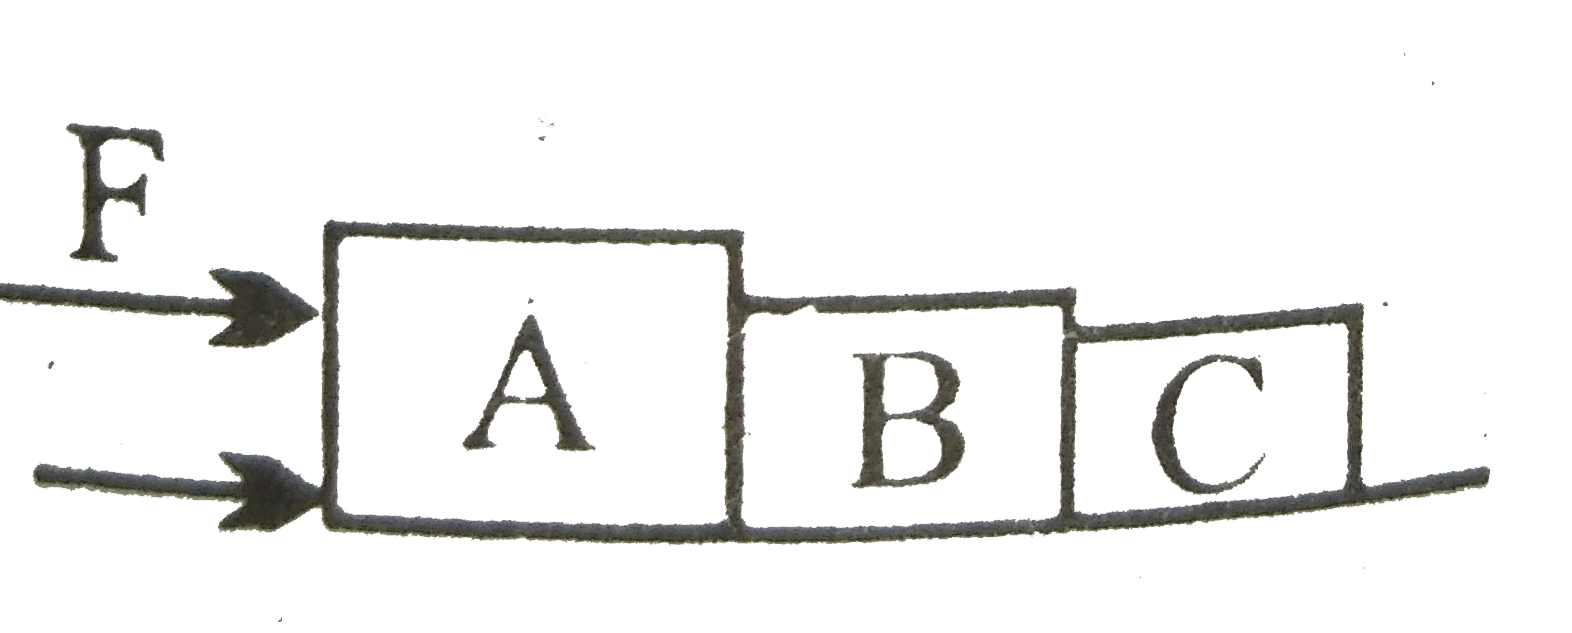 तीन गुटके A, B और C आरेख में दिखलाए अनुसार एक दूसरे के संपर्क में हैं । इन्हें एक घर्षण रहित पृष्ठ पर रखा गया है । यदि गुटकों के द्रव्यमान 4 किग्रा, 2 किग्रा तथा 1 किग्रा हैं । यदि गुटके A पर 14 न्यूटन का बल लगाया गया है तो A तथा B के बीच संपर्क बल होगा -